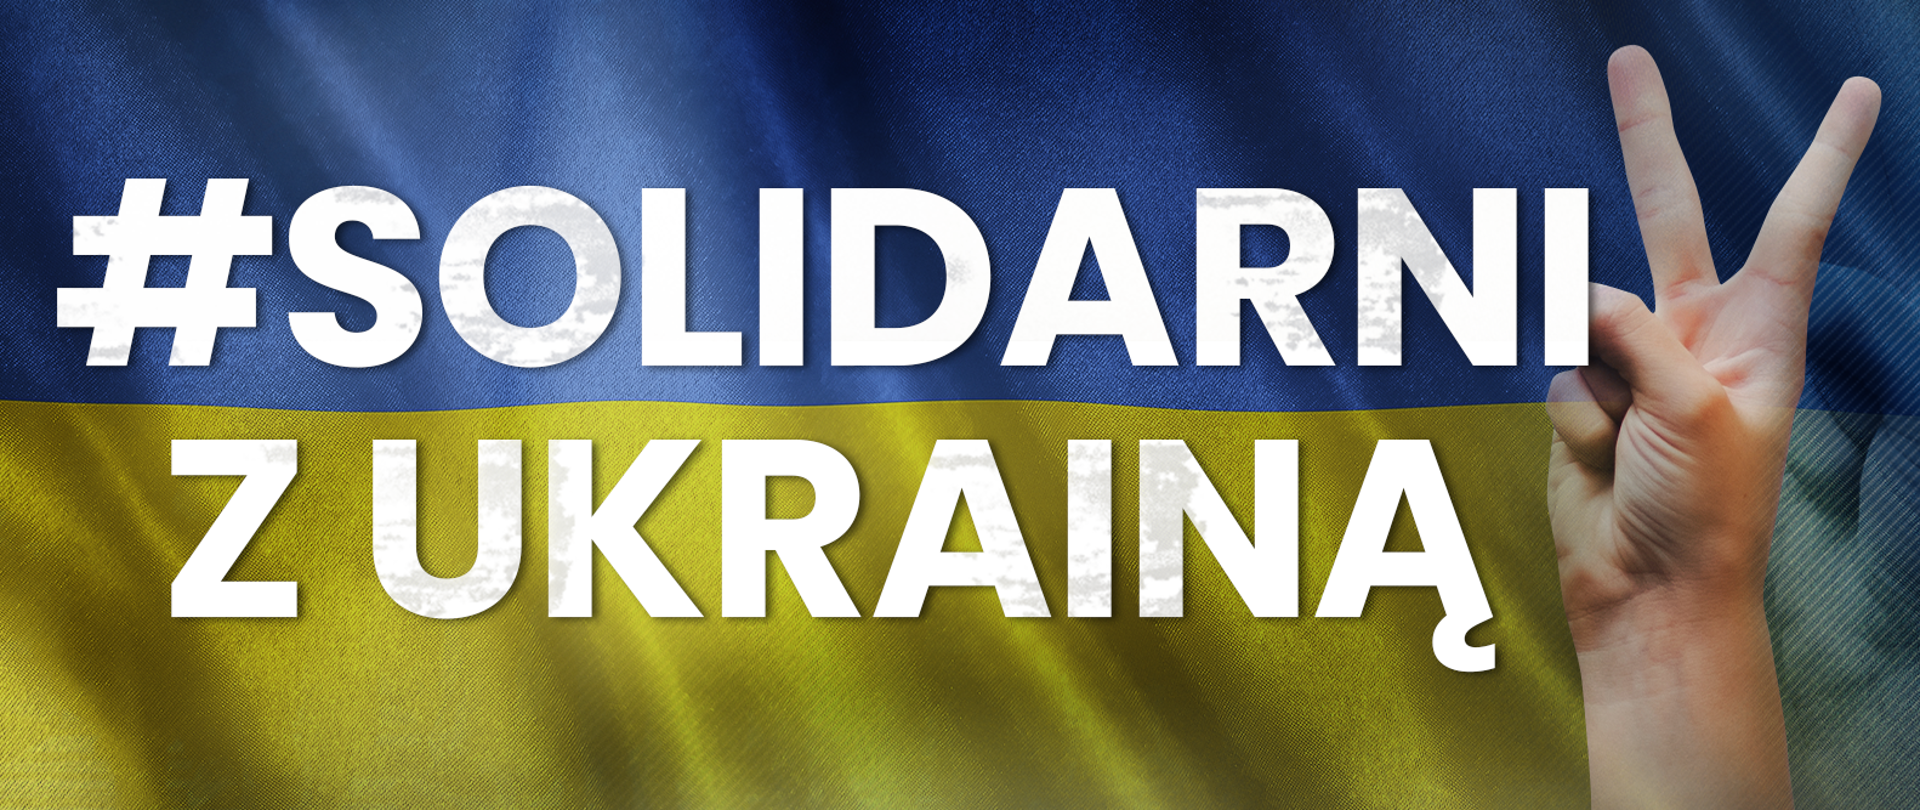 #SolidarnizUkrainą